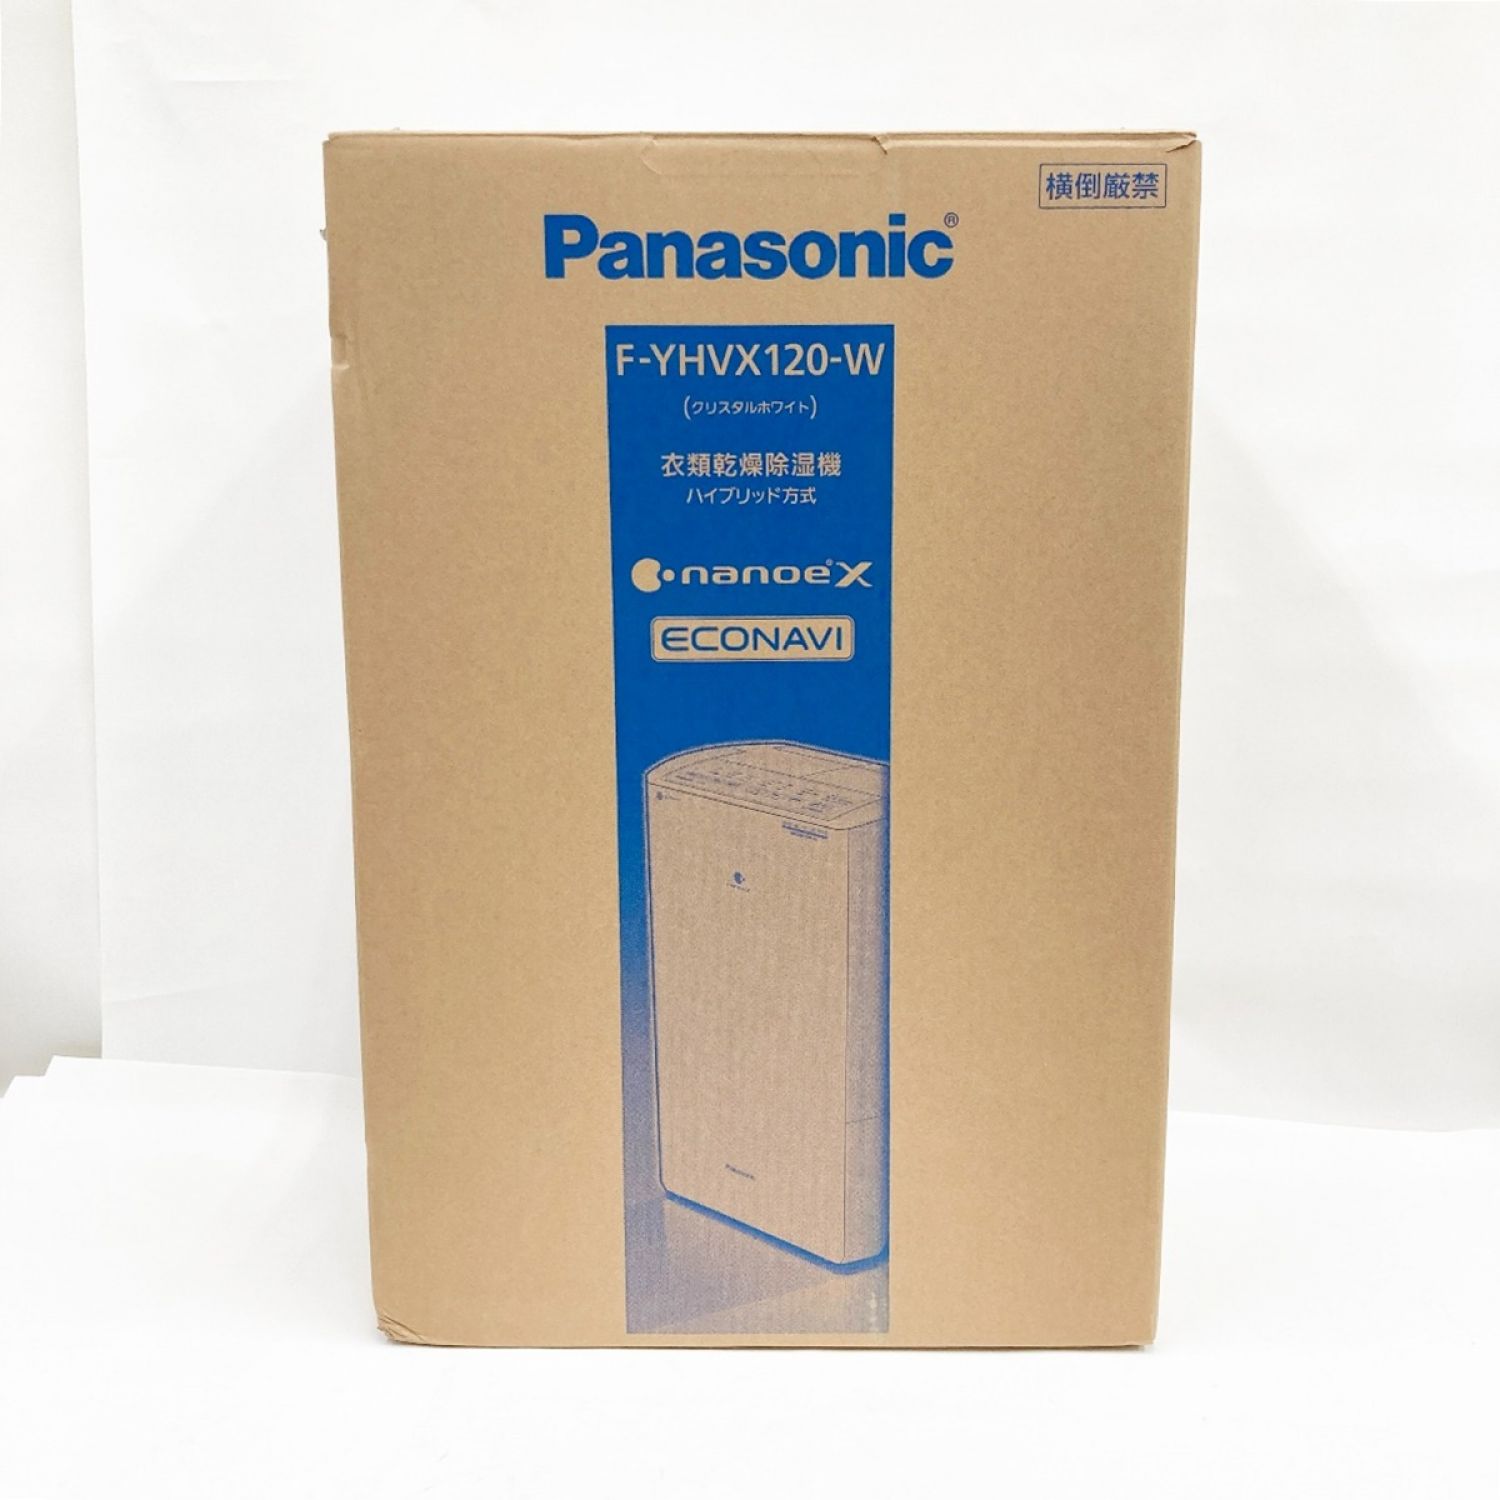 Panasonic 衣類乾燥除湿器 F-YHVX120-W 未開封未使用品-